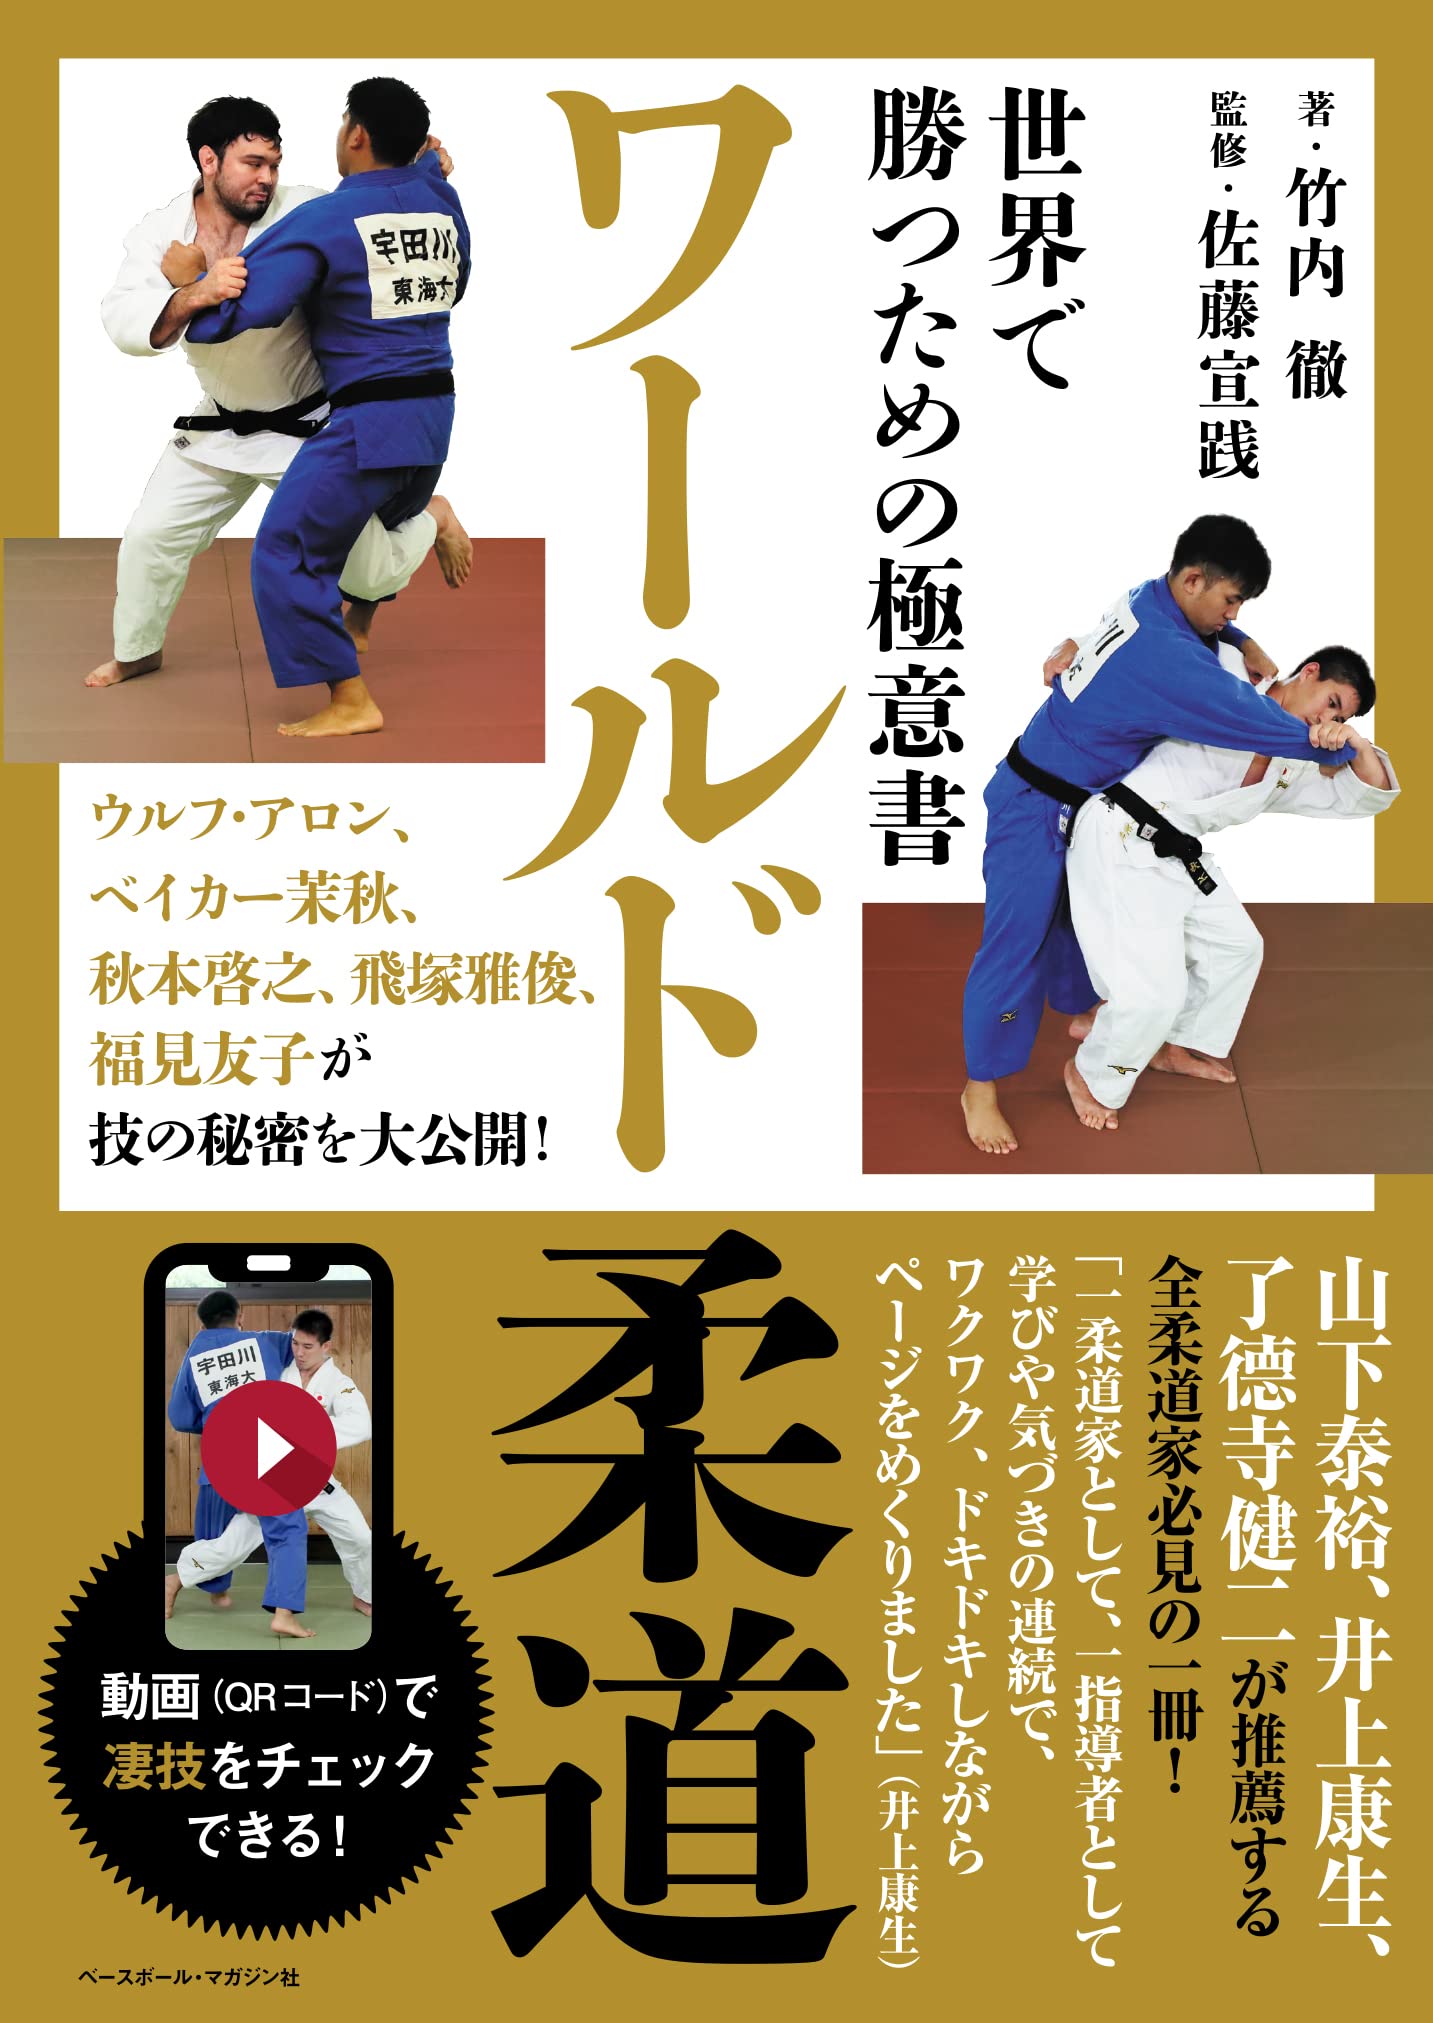 Libro de los secretos del judo mundial para ganar (con códigos QR)